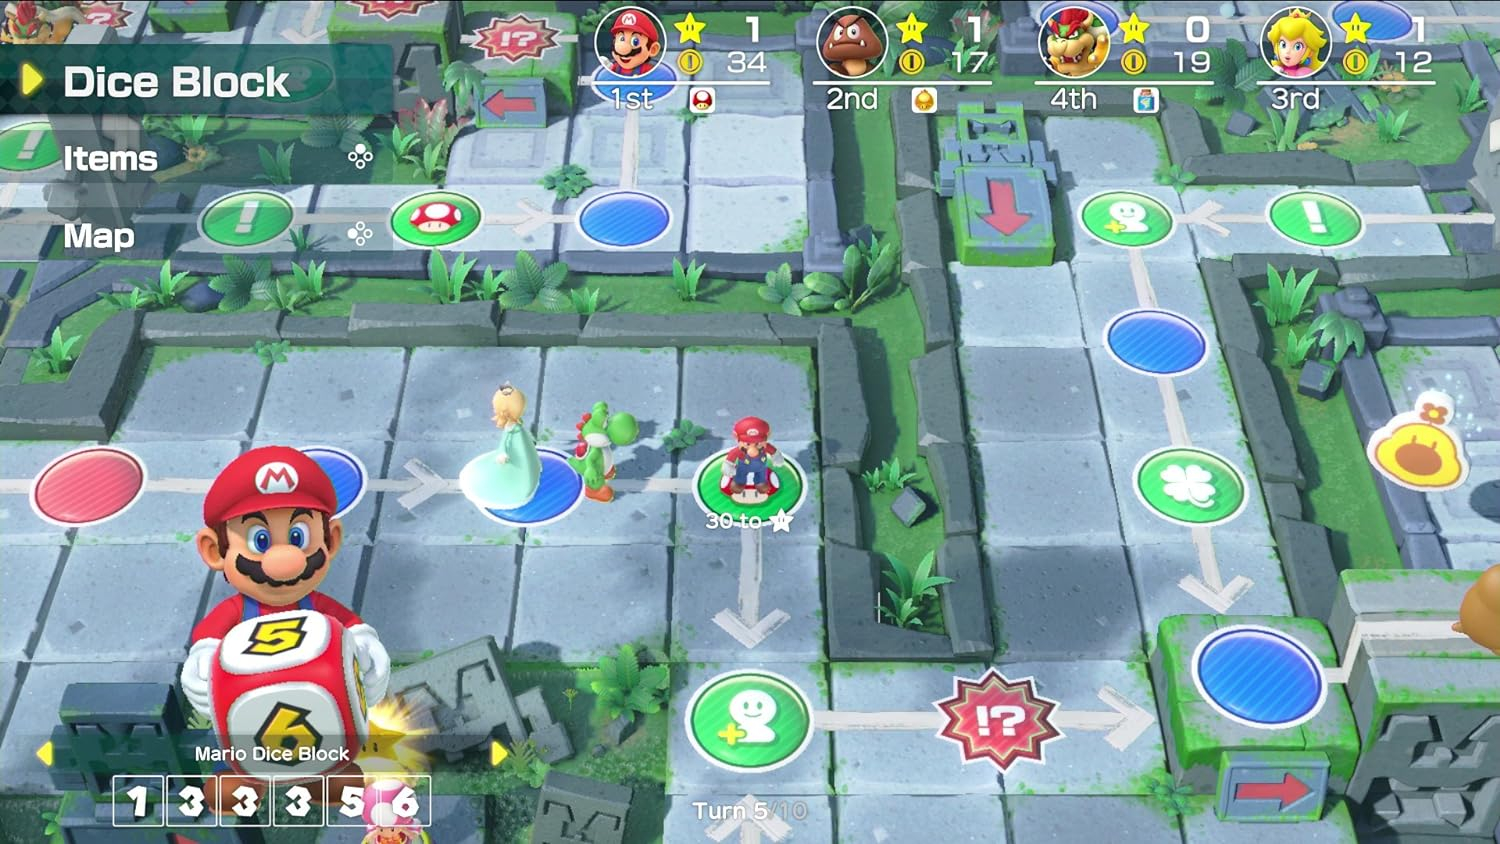 Super Mario Party™ + Red  Blue Joy-Con™ Bundle